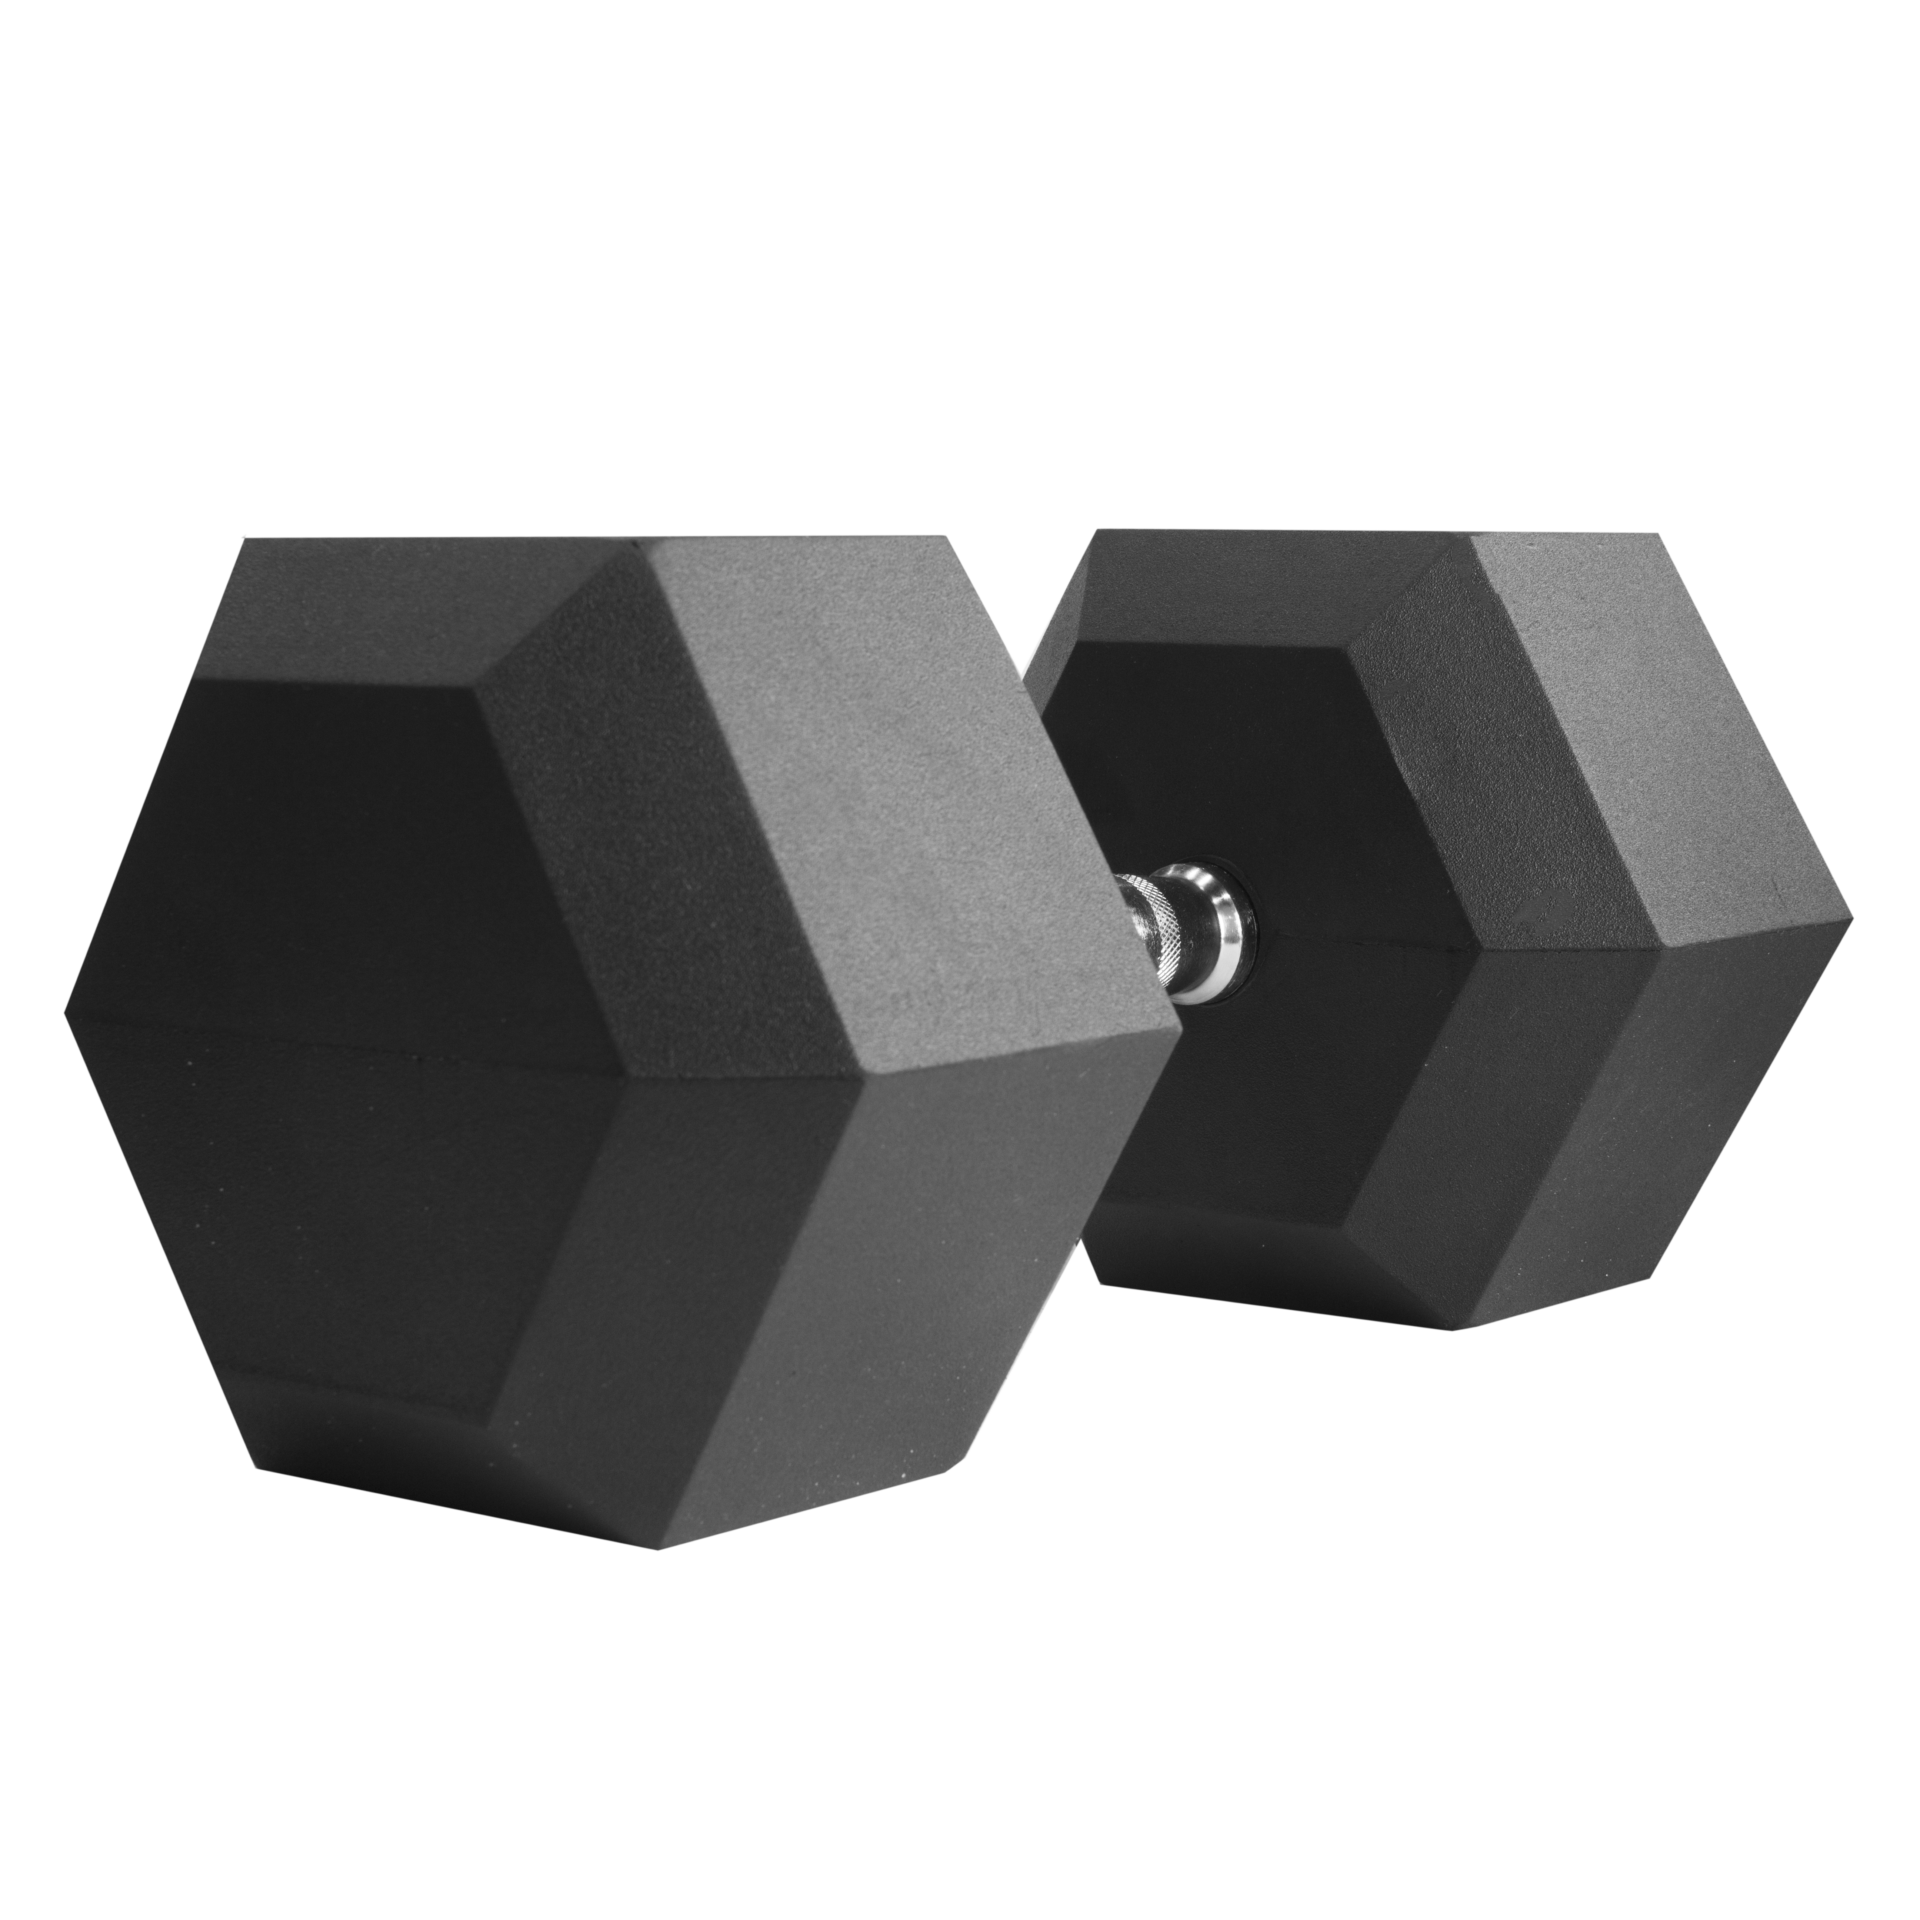 Hexagonal Dumbbell THORN equipment crossfit 42,5kg Fit Thorn | Manufacturer equipment FIT Crossfit HEX – | of